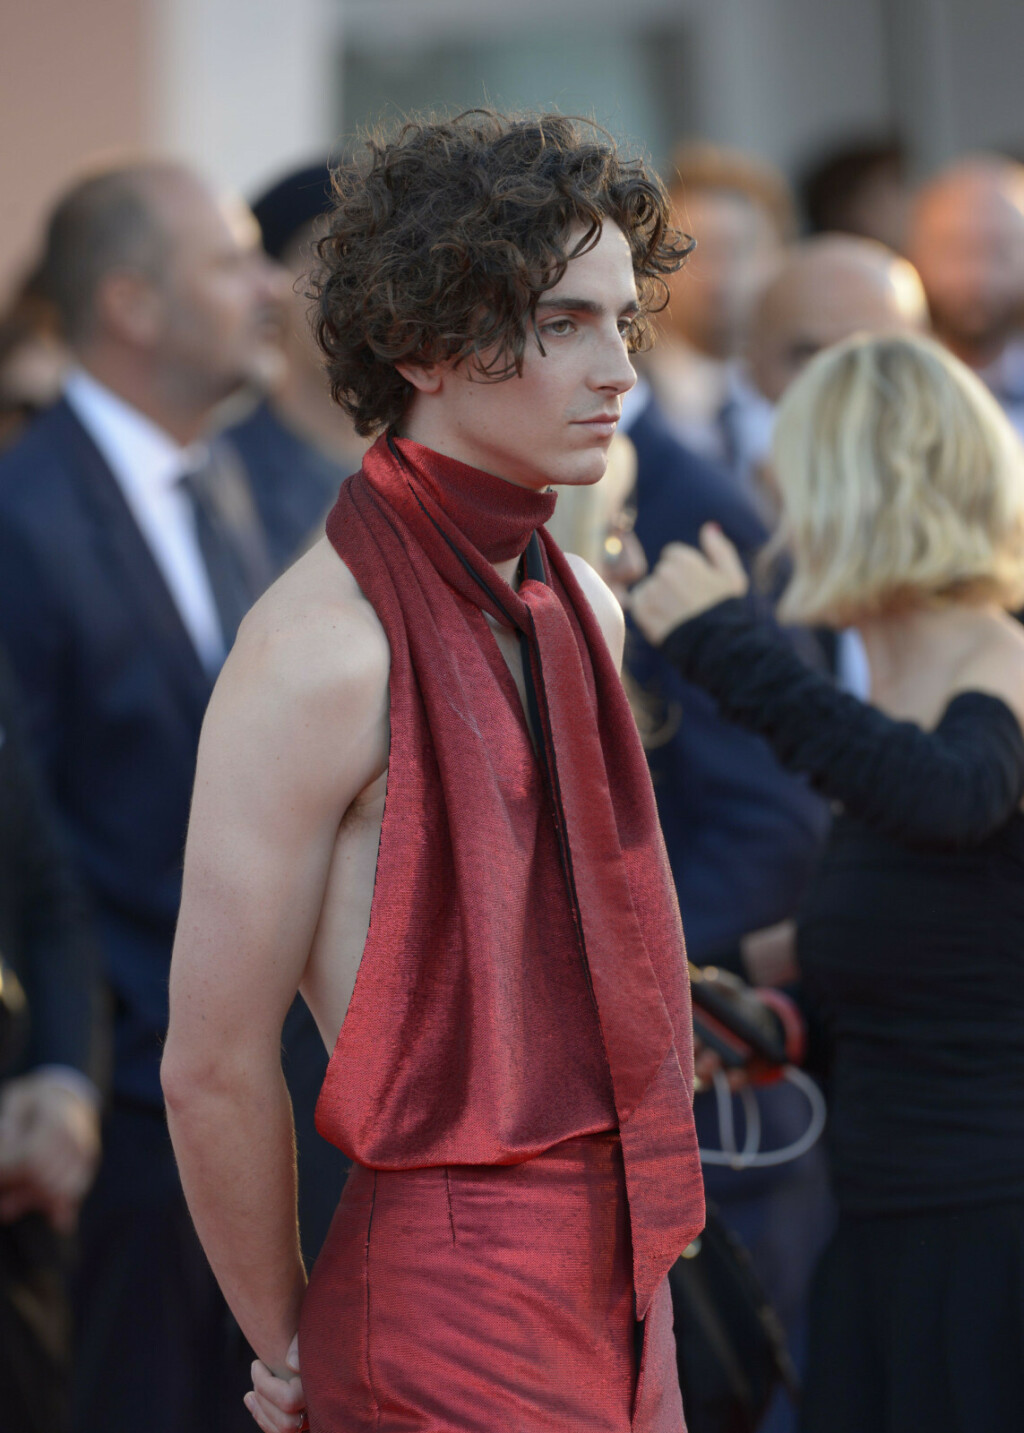 Glumac Timothee Chalamet u odijelu s golim leđima na Filmskom festivalu u Veneciji - 4